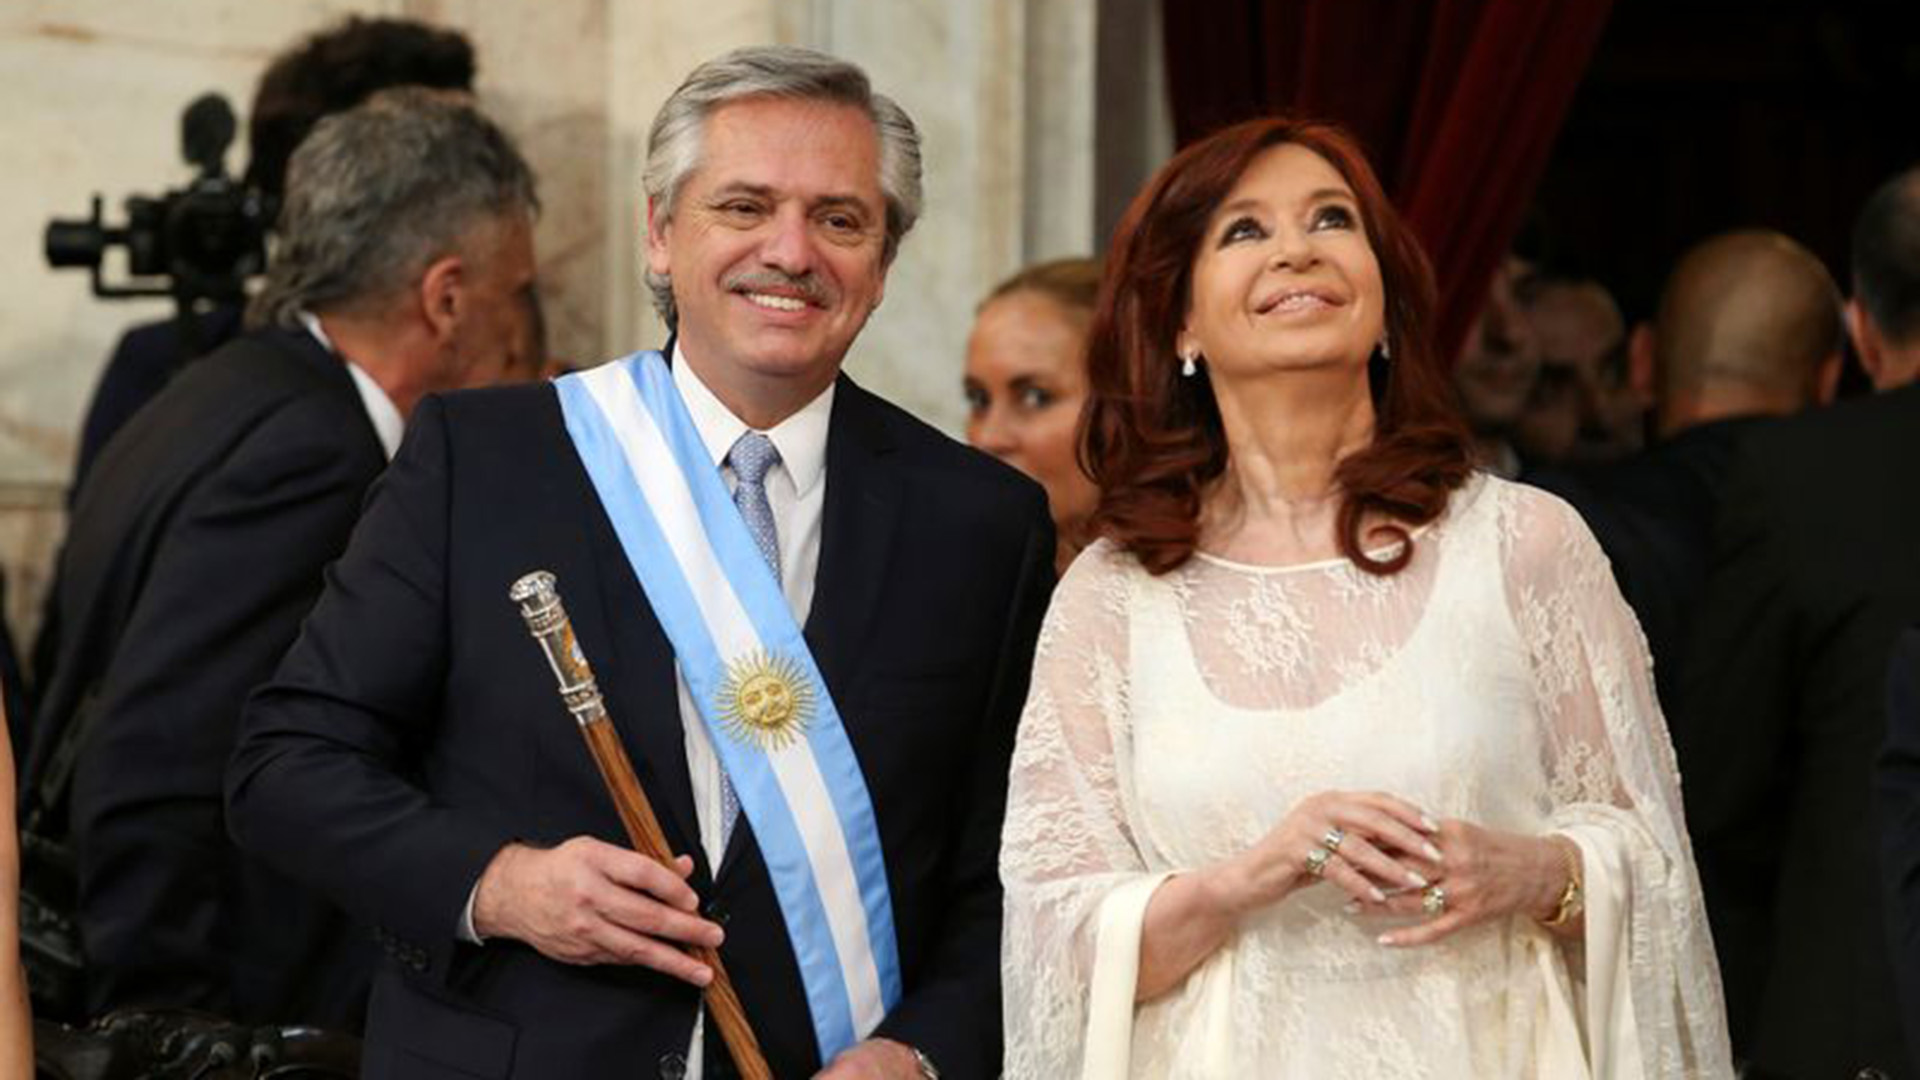 Foto de archivo: Alberto Fernández, con la banda presidencial y el bastón, junto a Cristina Kirchner. Fue el 10 de diciembre de 2019 en la ceremonia de asunción